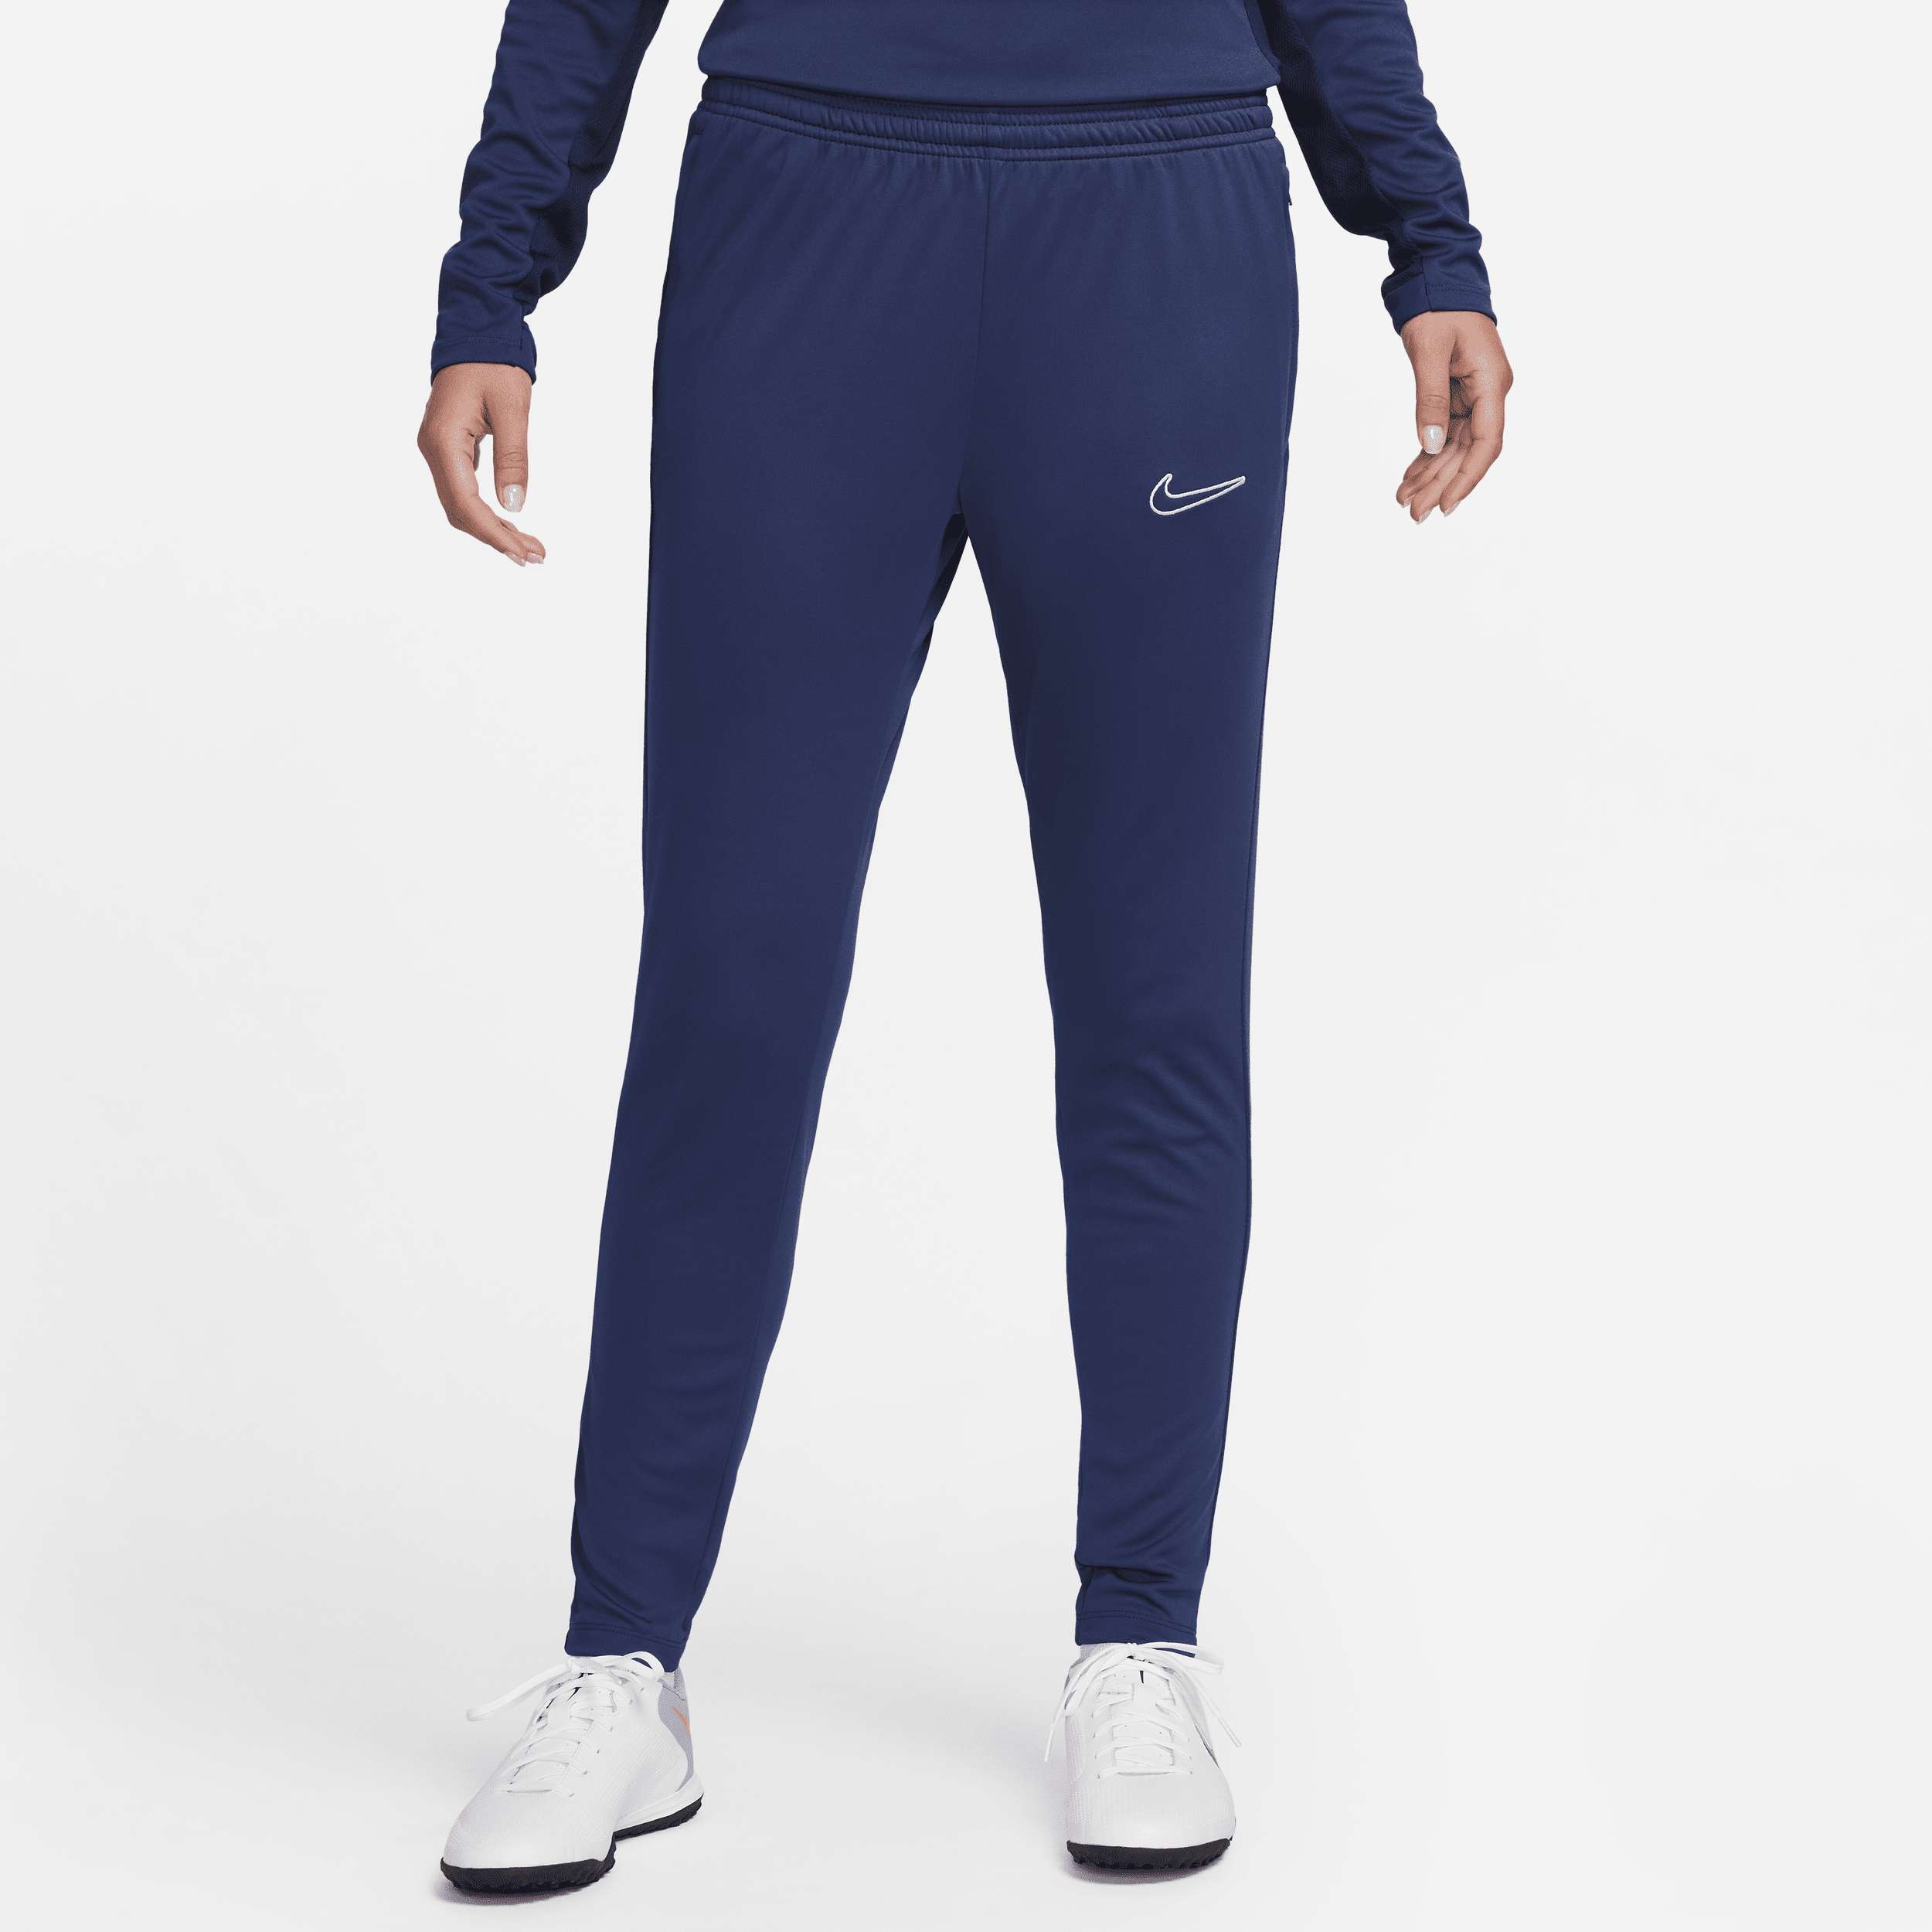 Nike Women's Dri-fit Academy Soccer Pants In Blue